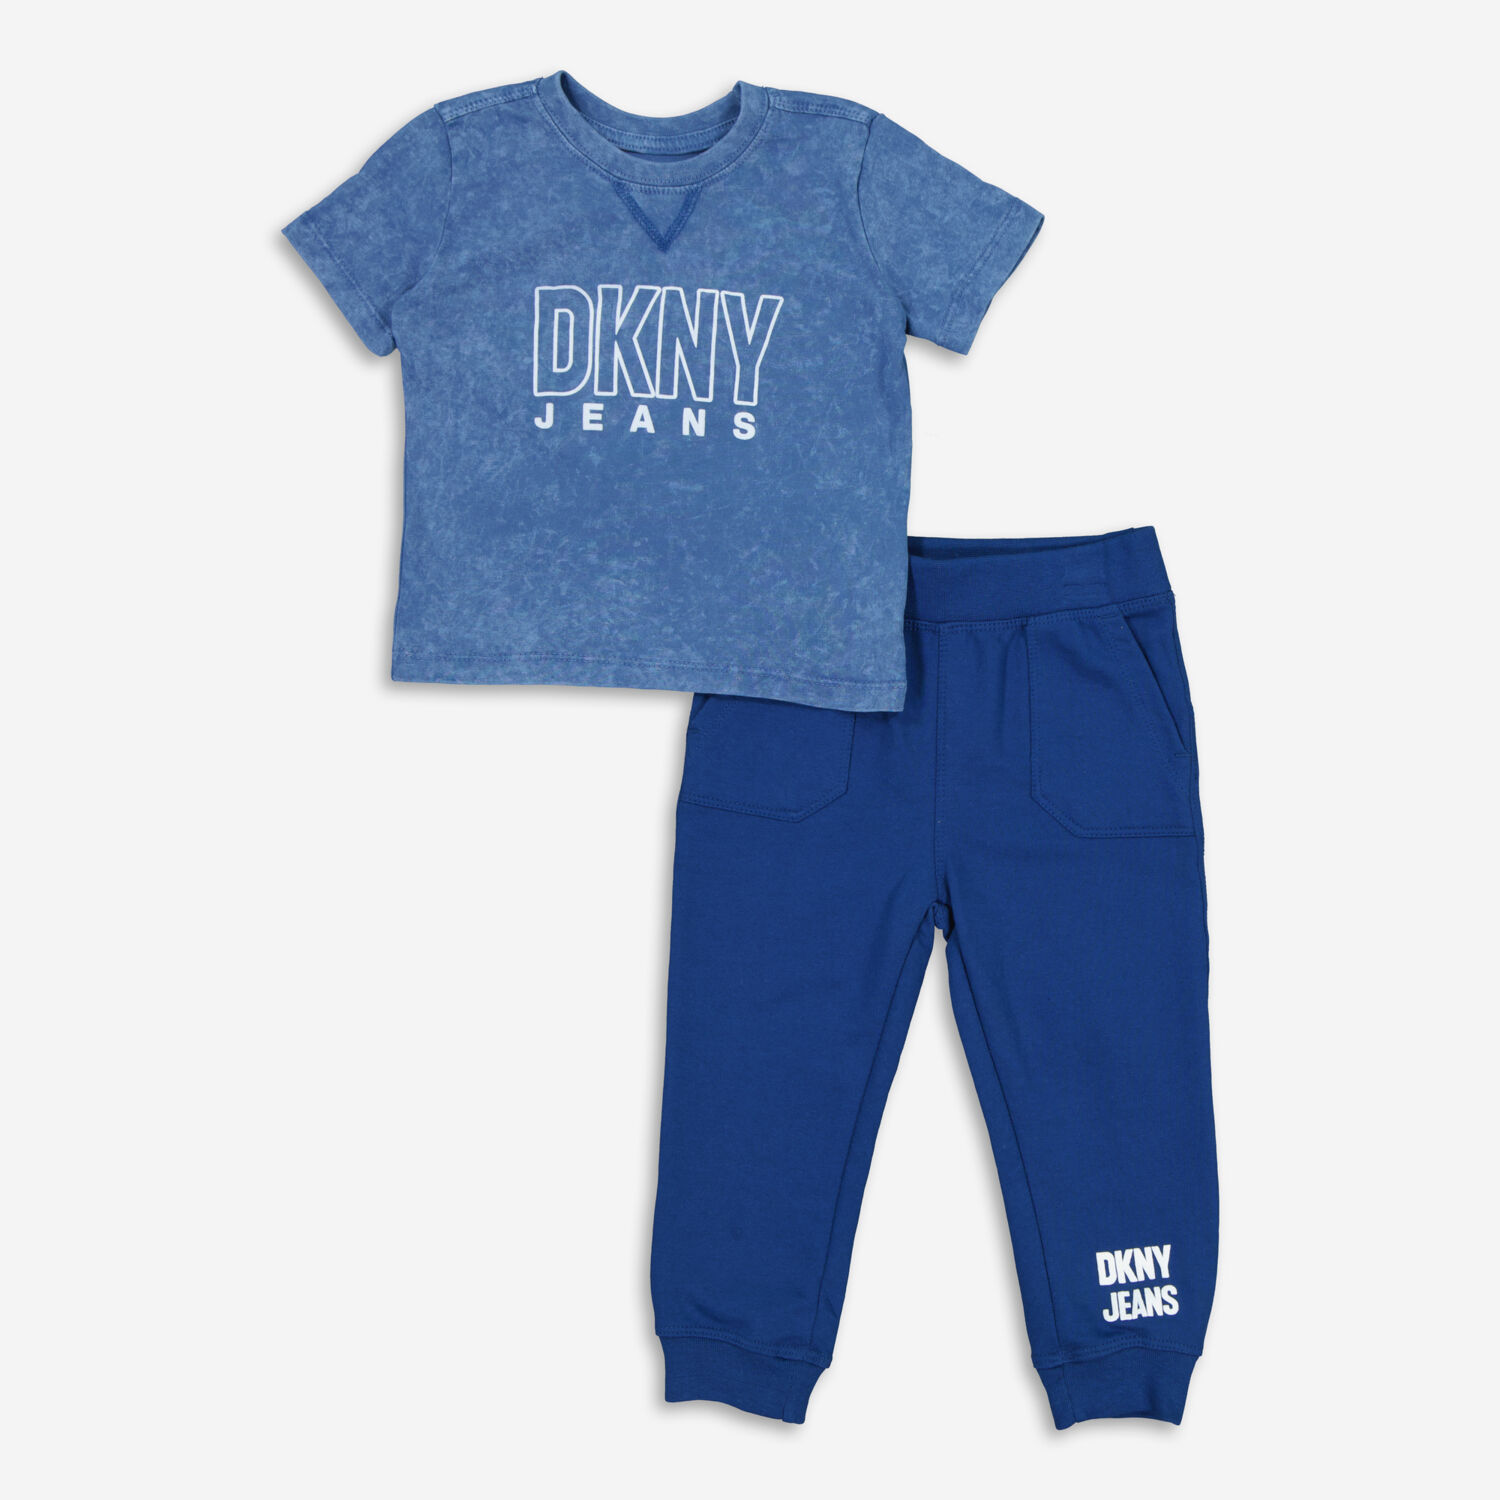 Комплект-двойка, состоящий из синей футболки и спортивных штанов DKNY Jeans